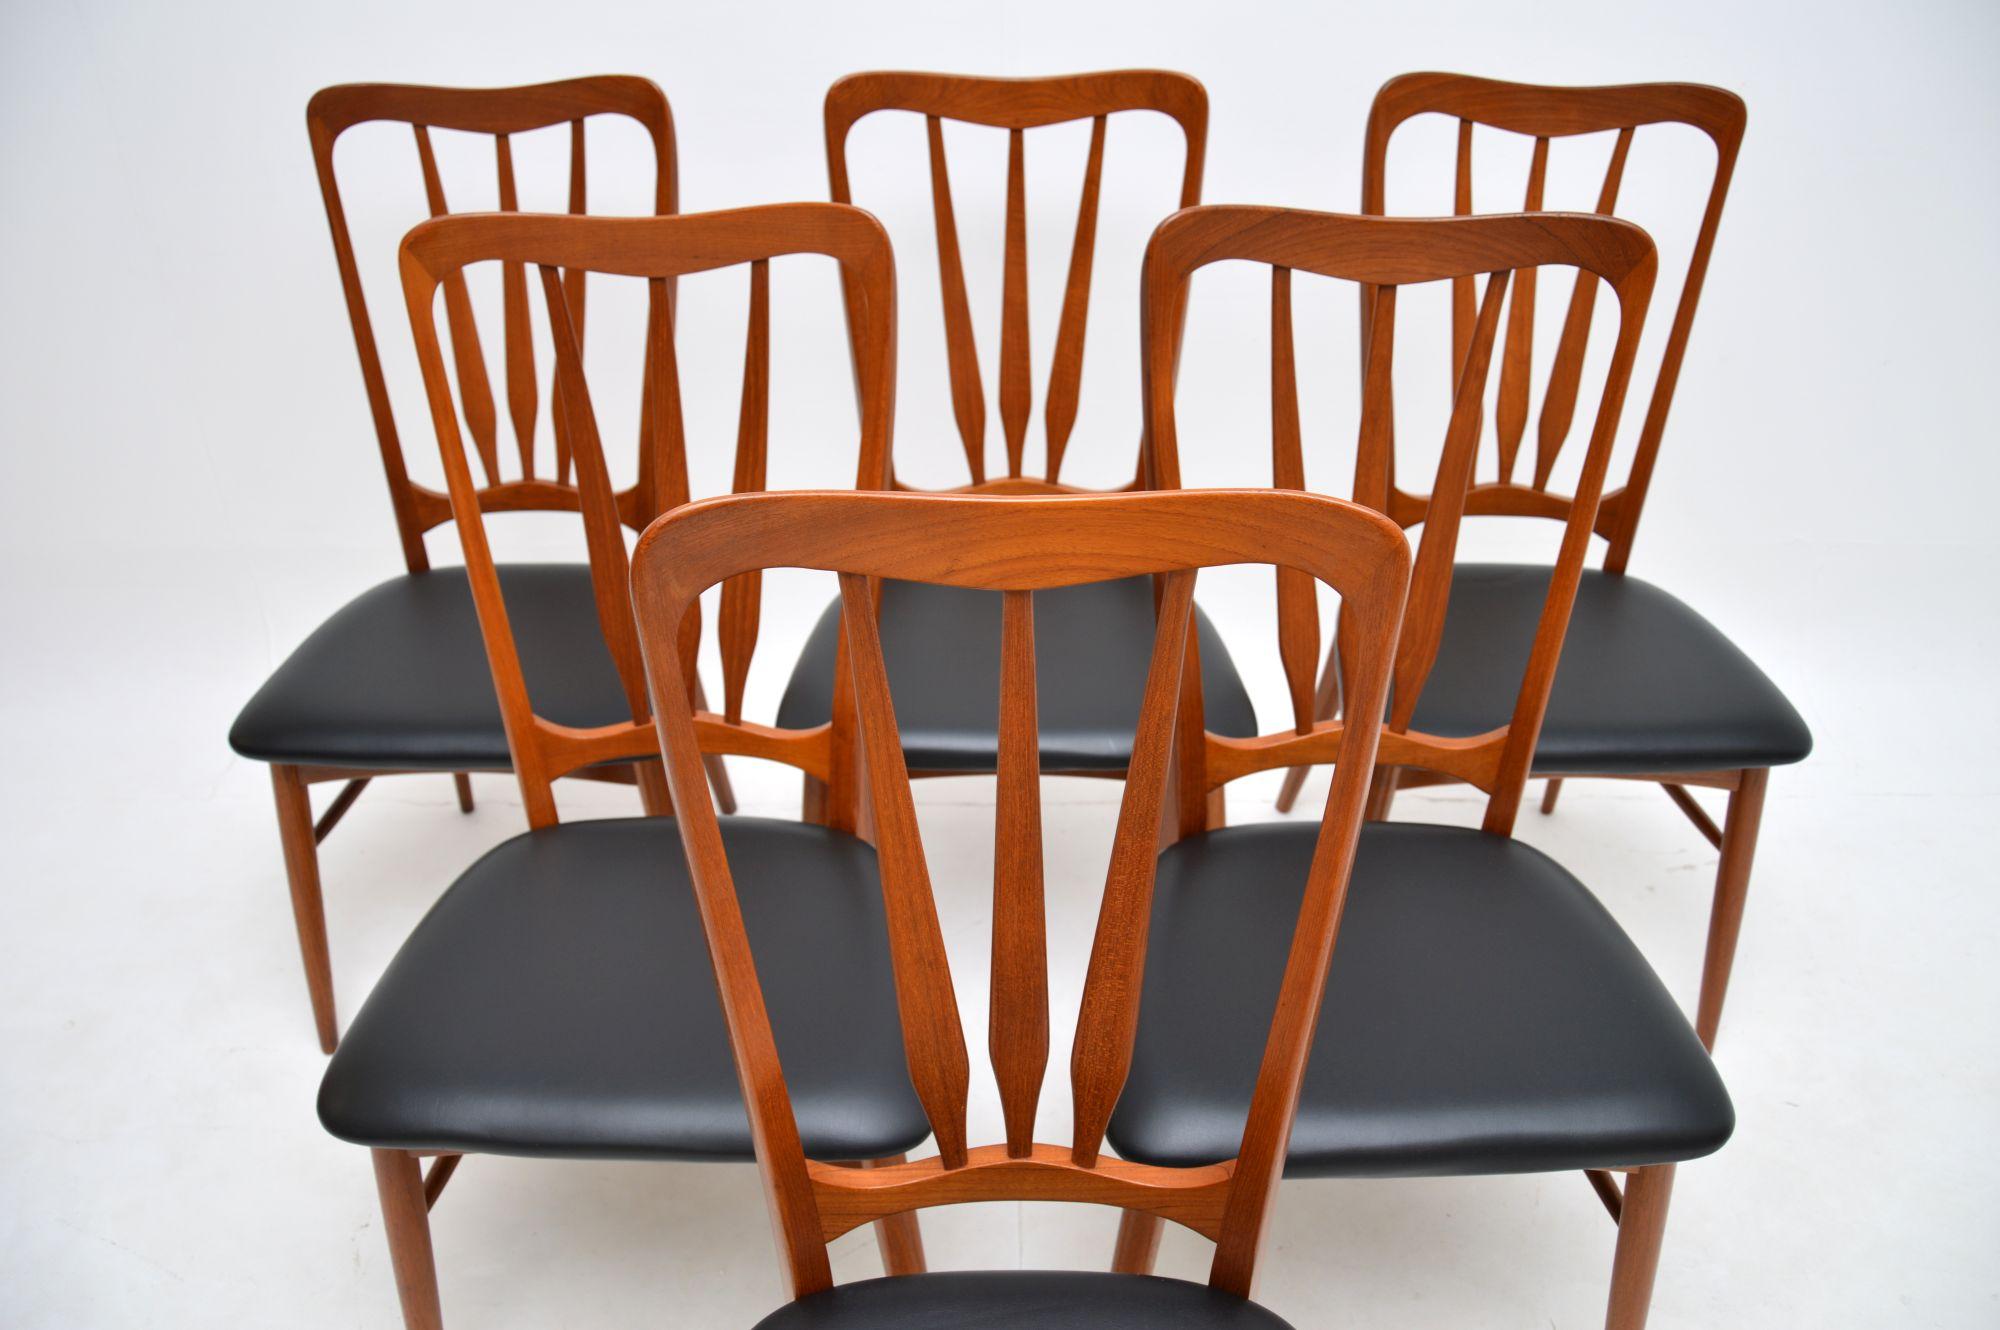 Ein stilvolles und sehr gut verarbeitetes Set von sechs dänischen Teakholz-Esszimmerstühlen 'Ingrid' von Niels Koefoed. Sie wurden in Dänemark hergestellt und stammen aus den 1960er Jahren.

Die Qualität ist hervorragend, sie haben schön geformte